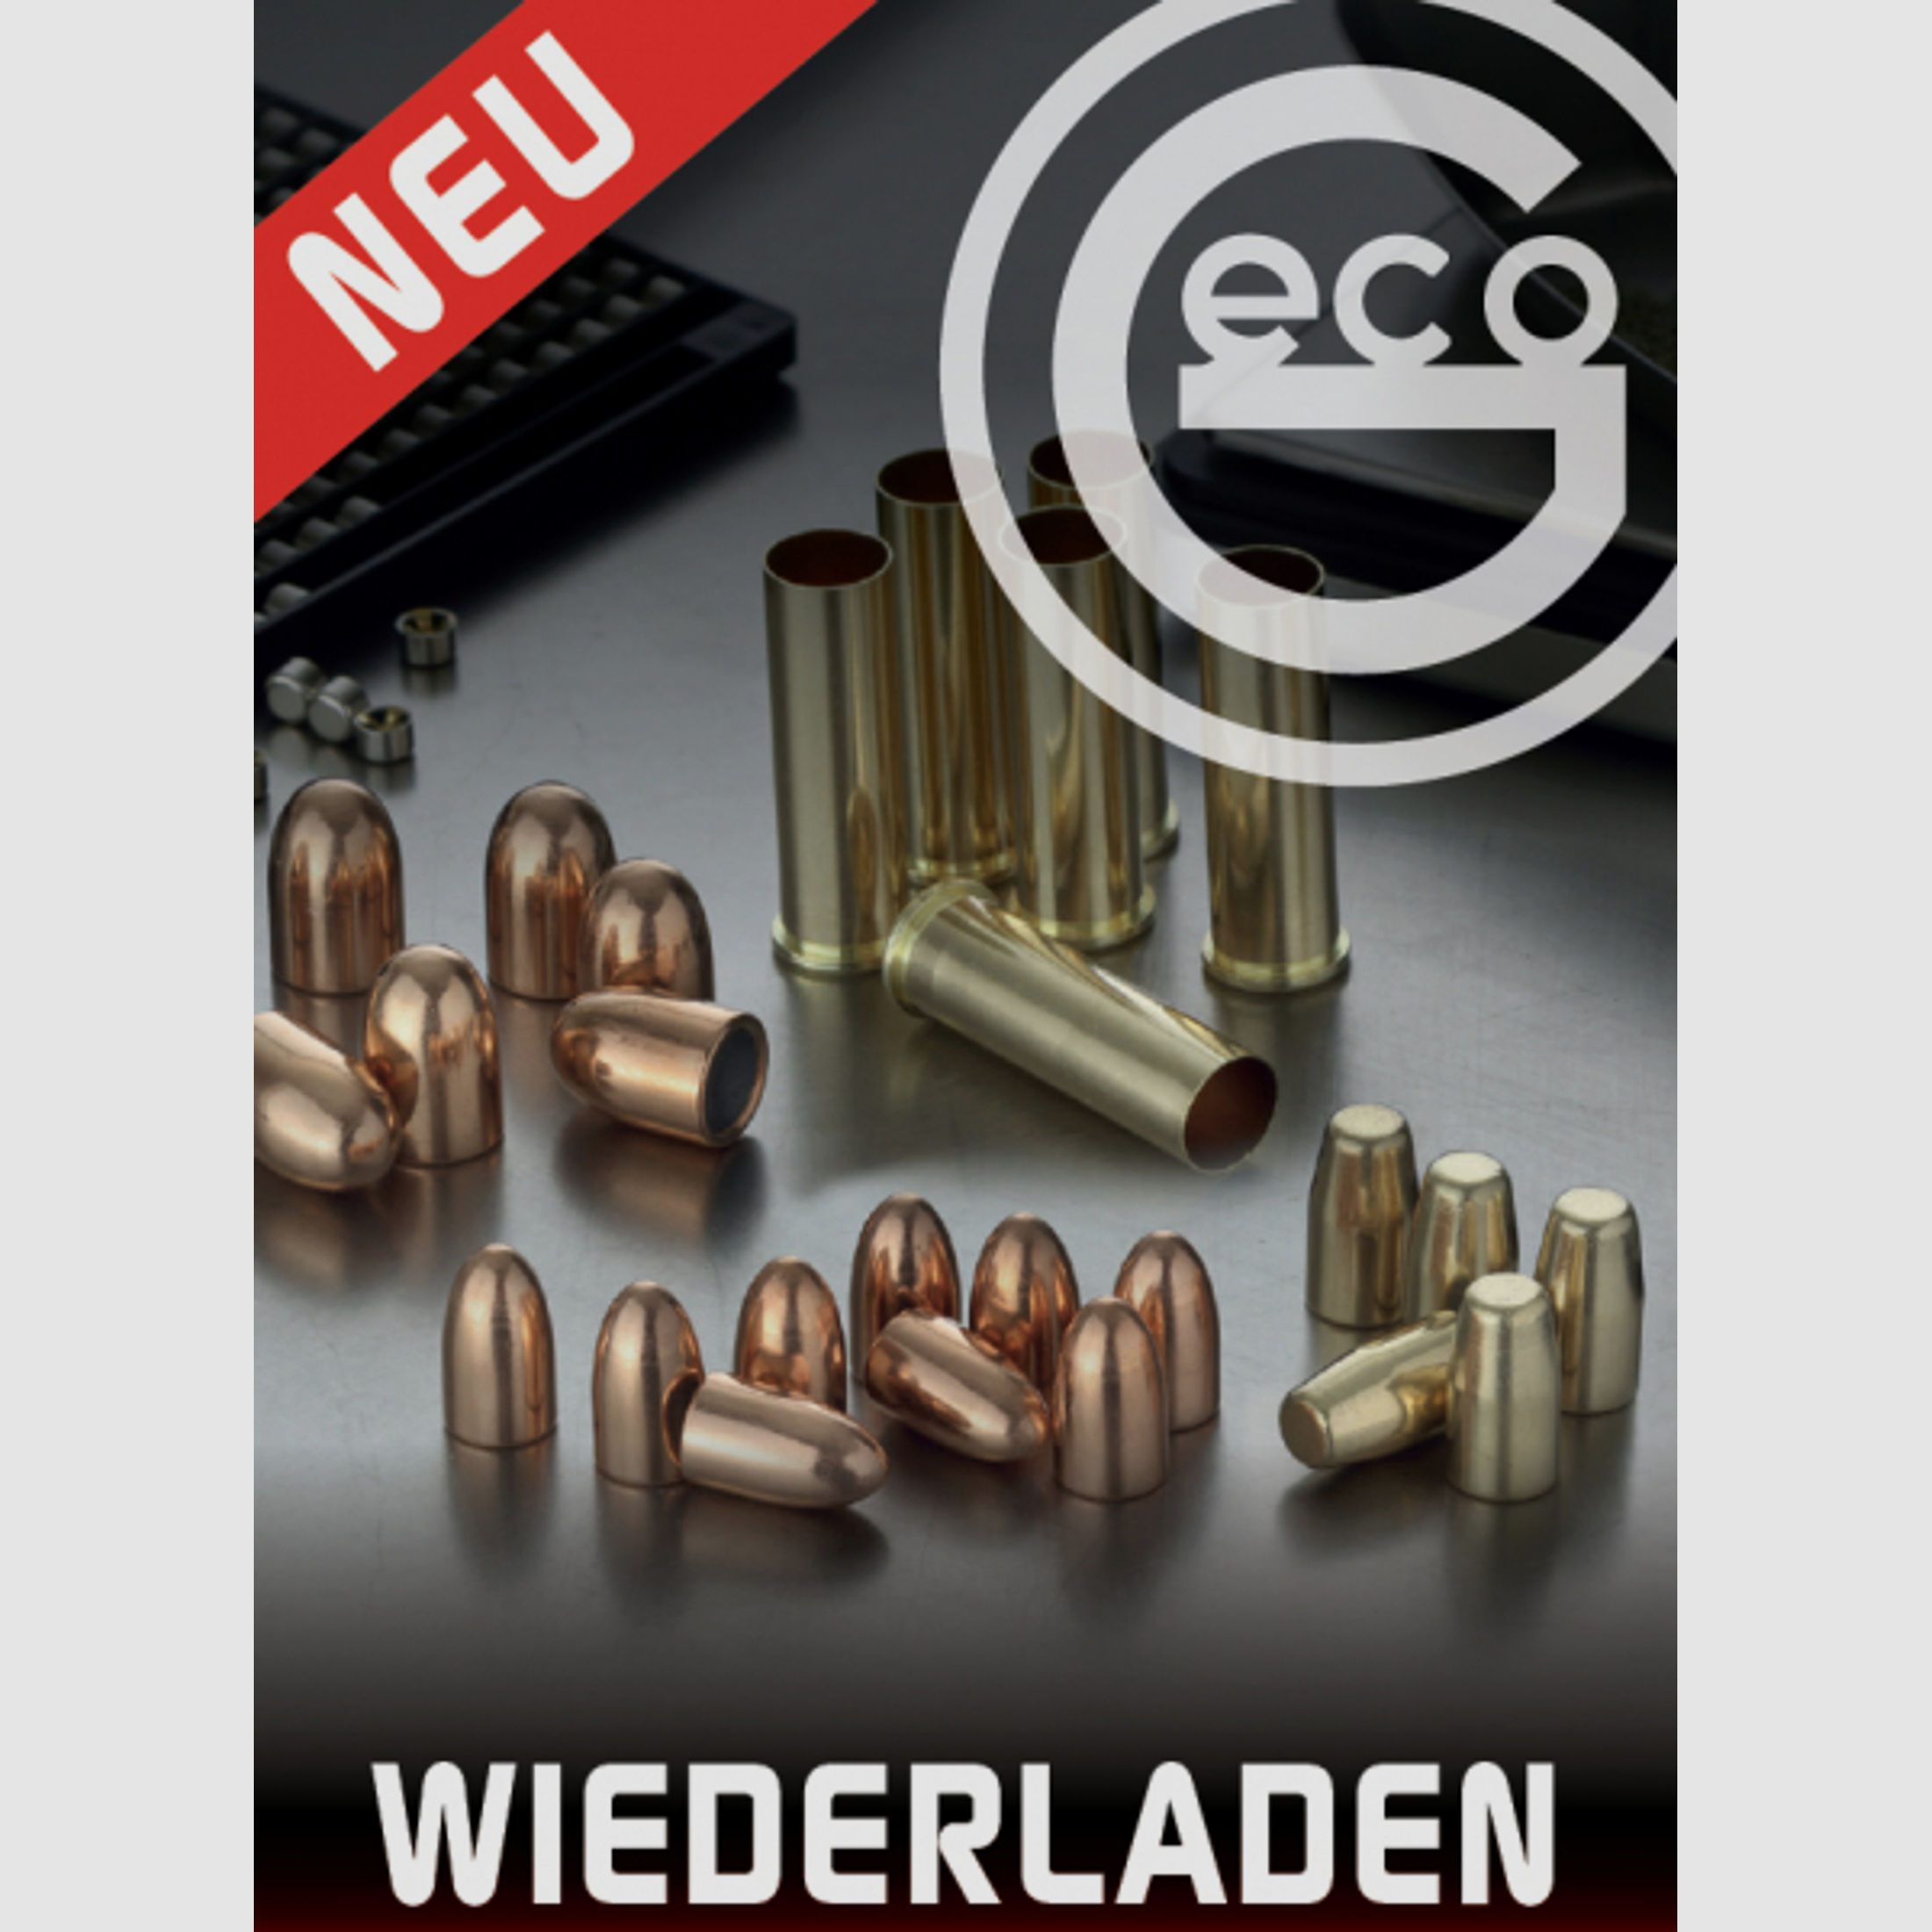 1.000 Stück NEUE GECO Wiederladerhülsen 9mm Luger / Para 9x19 (Boxerzündung) 1.000er Box #2318130